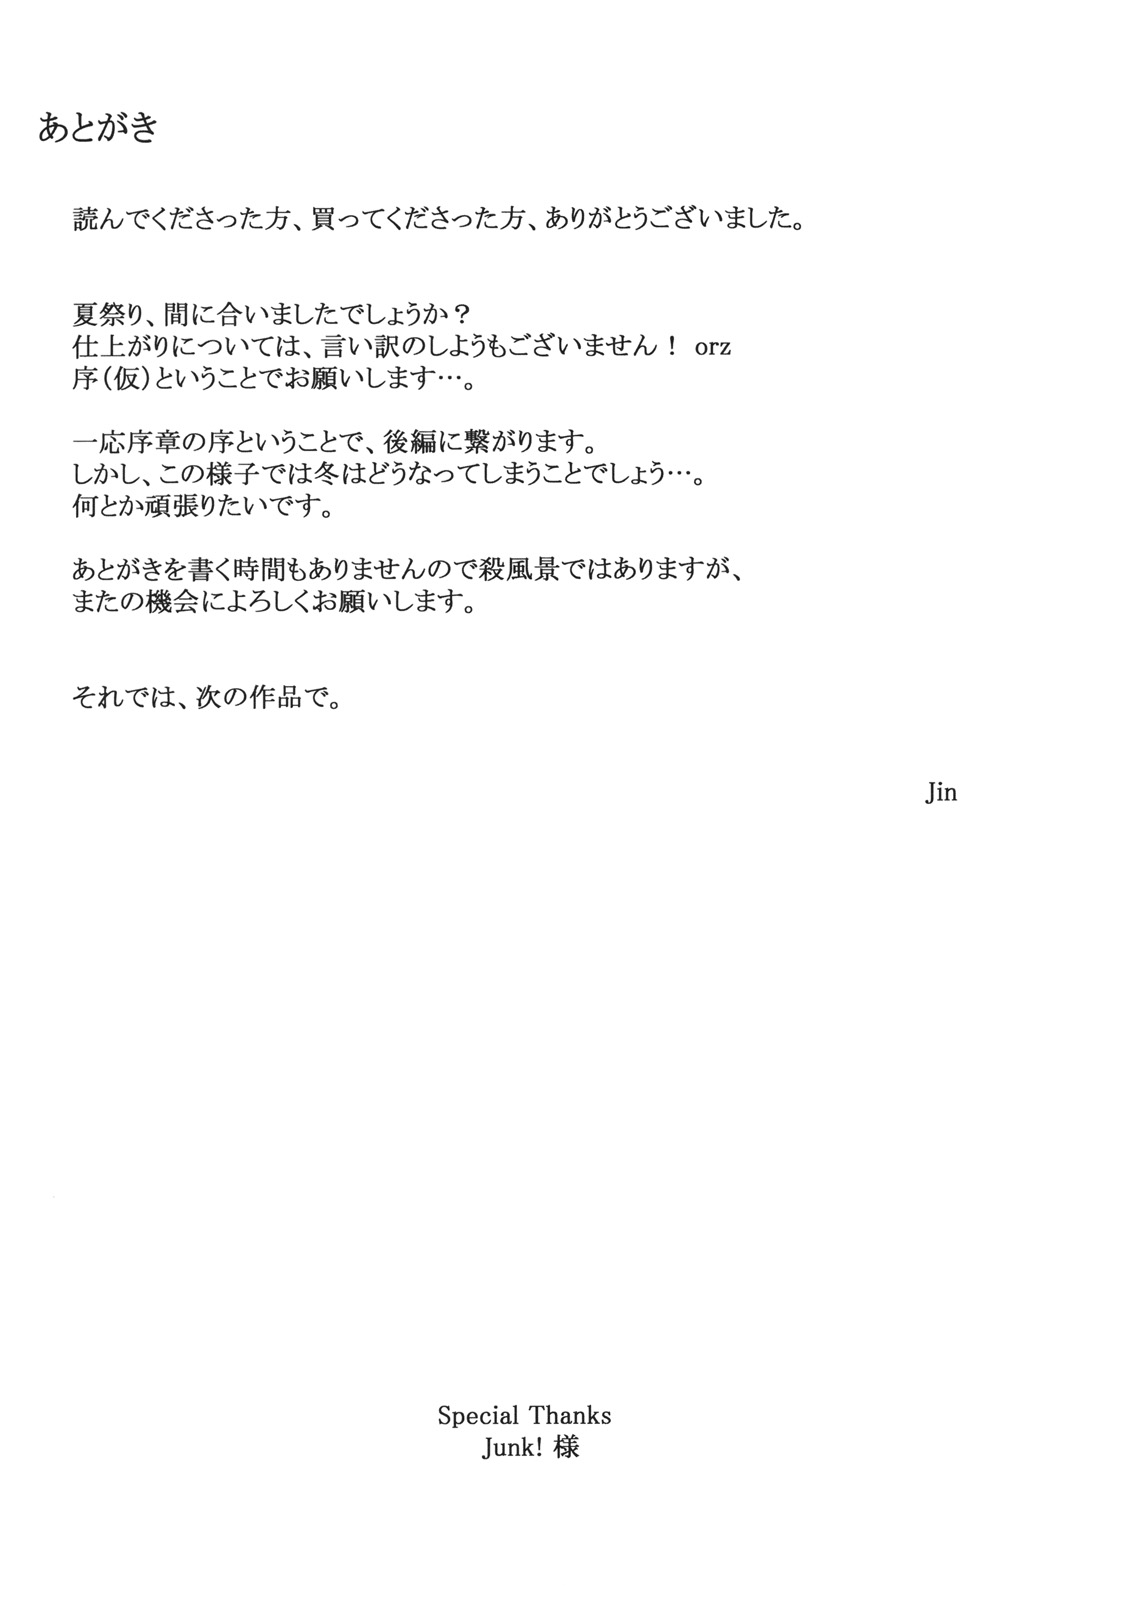 Tachibana01_0053.jpg